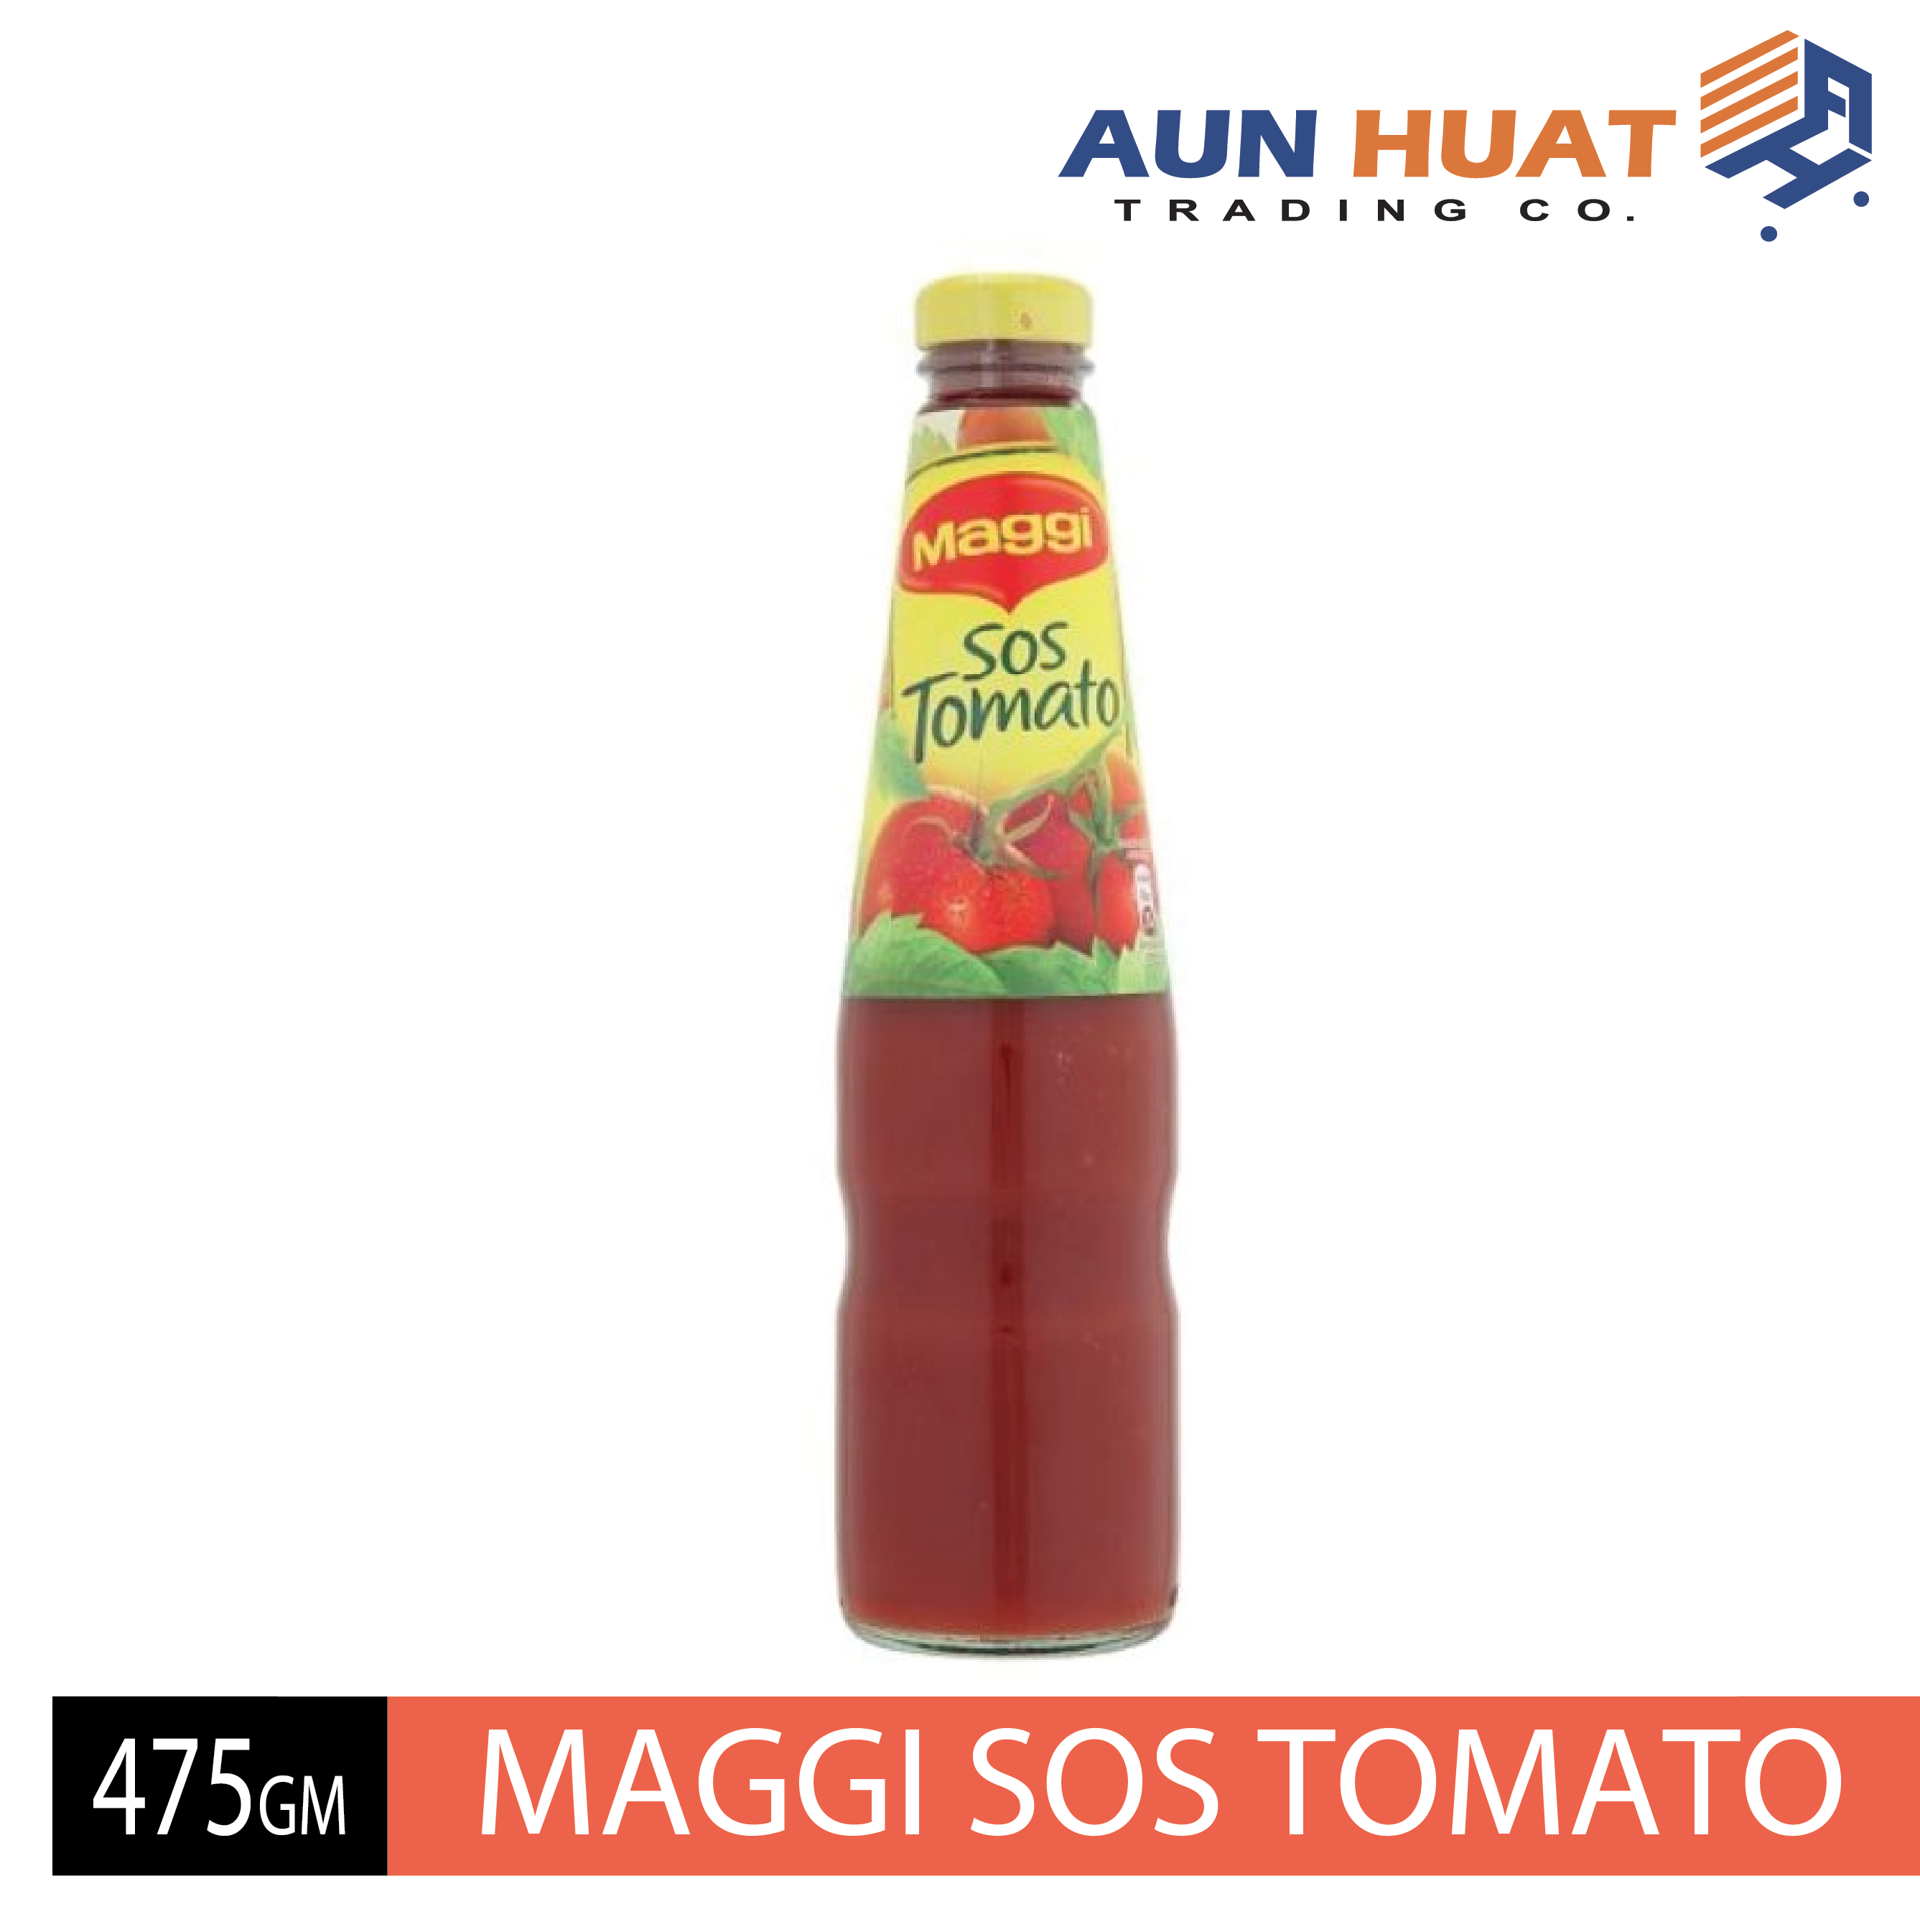 MAGGI Tomato Ketchup 475gm